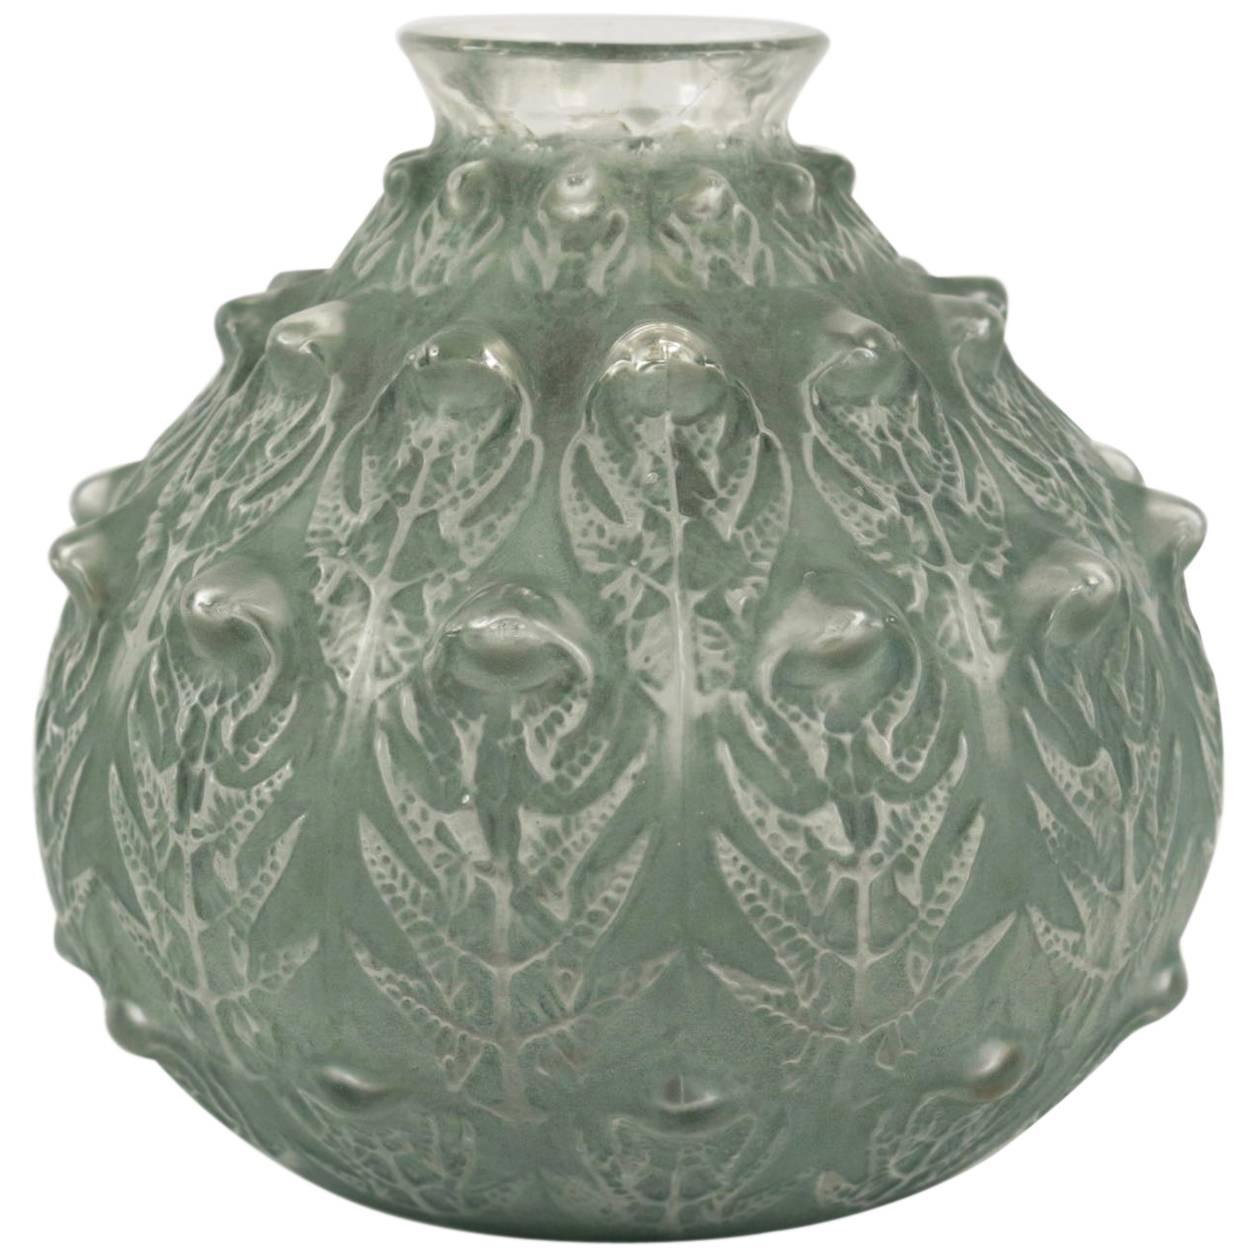 René Lalique "Fougères" Vase